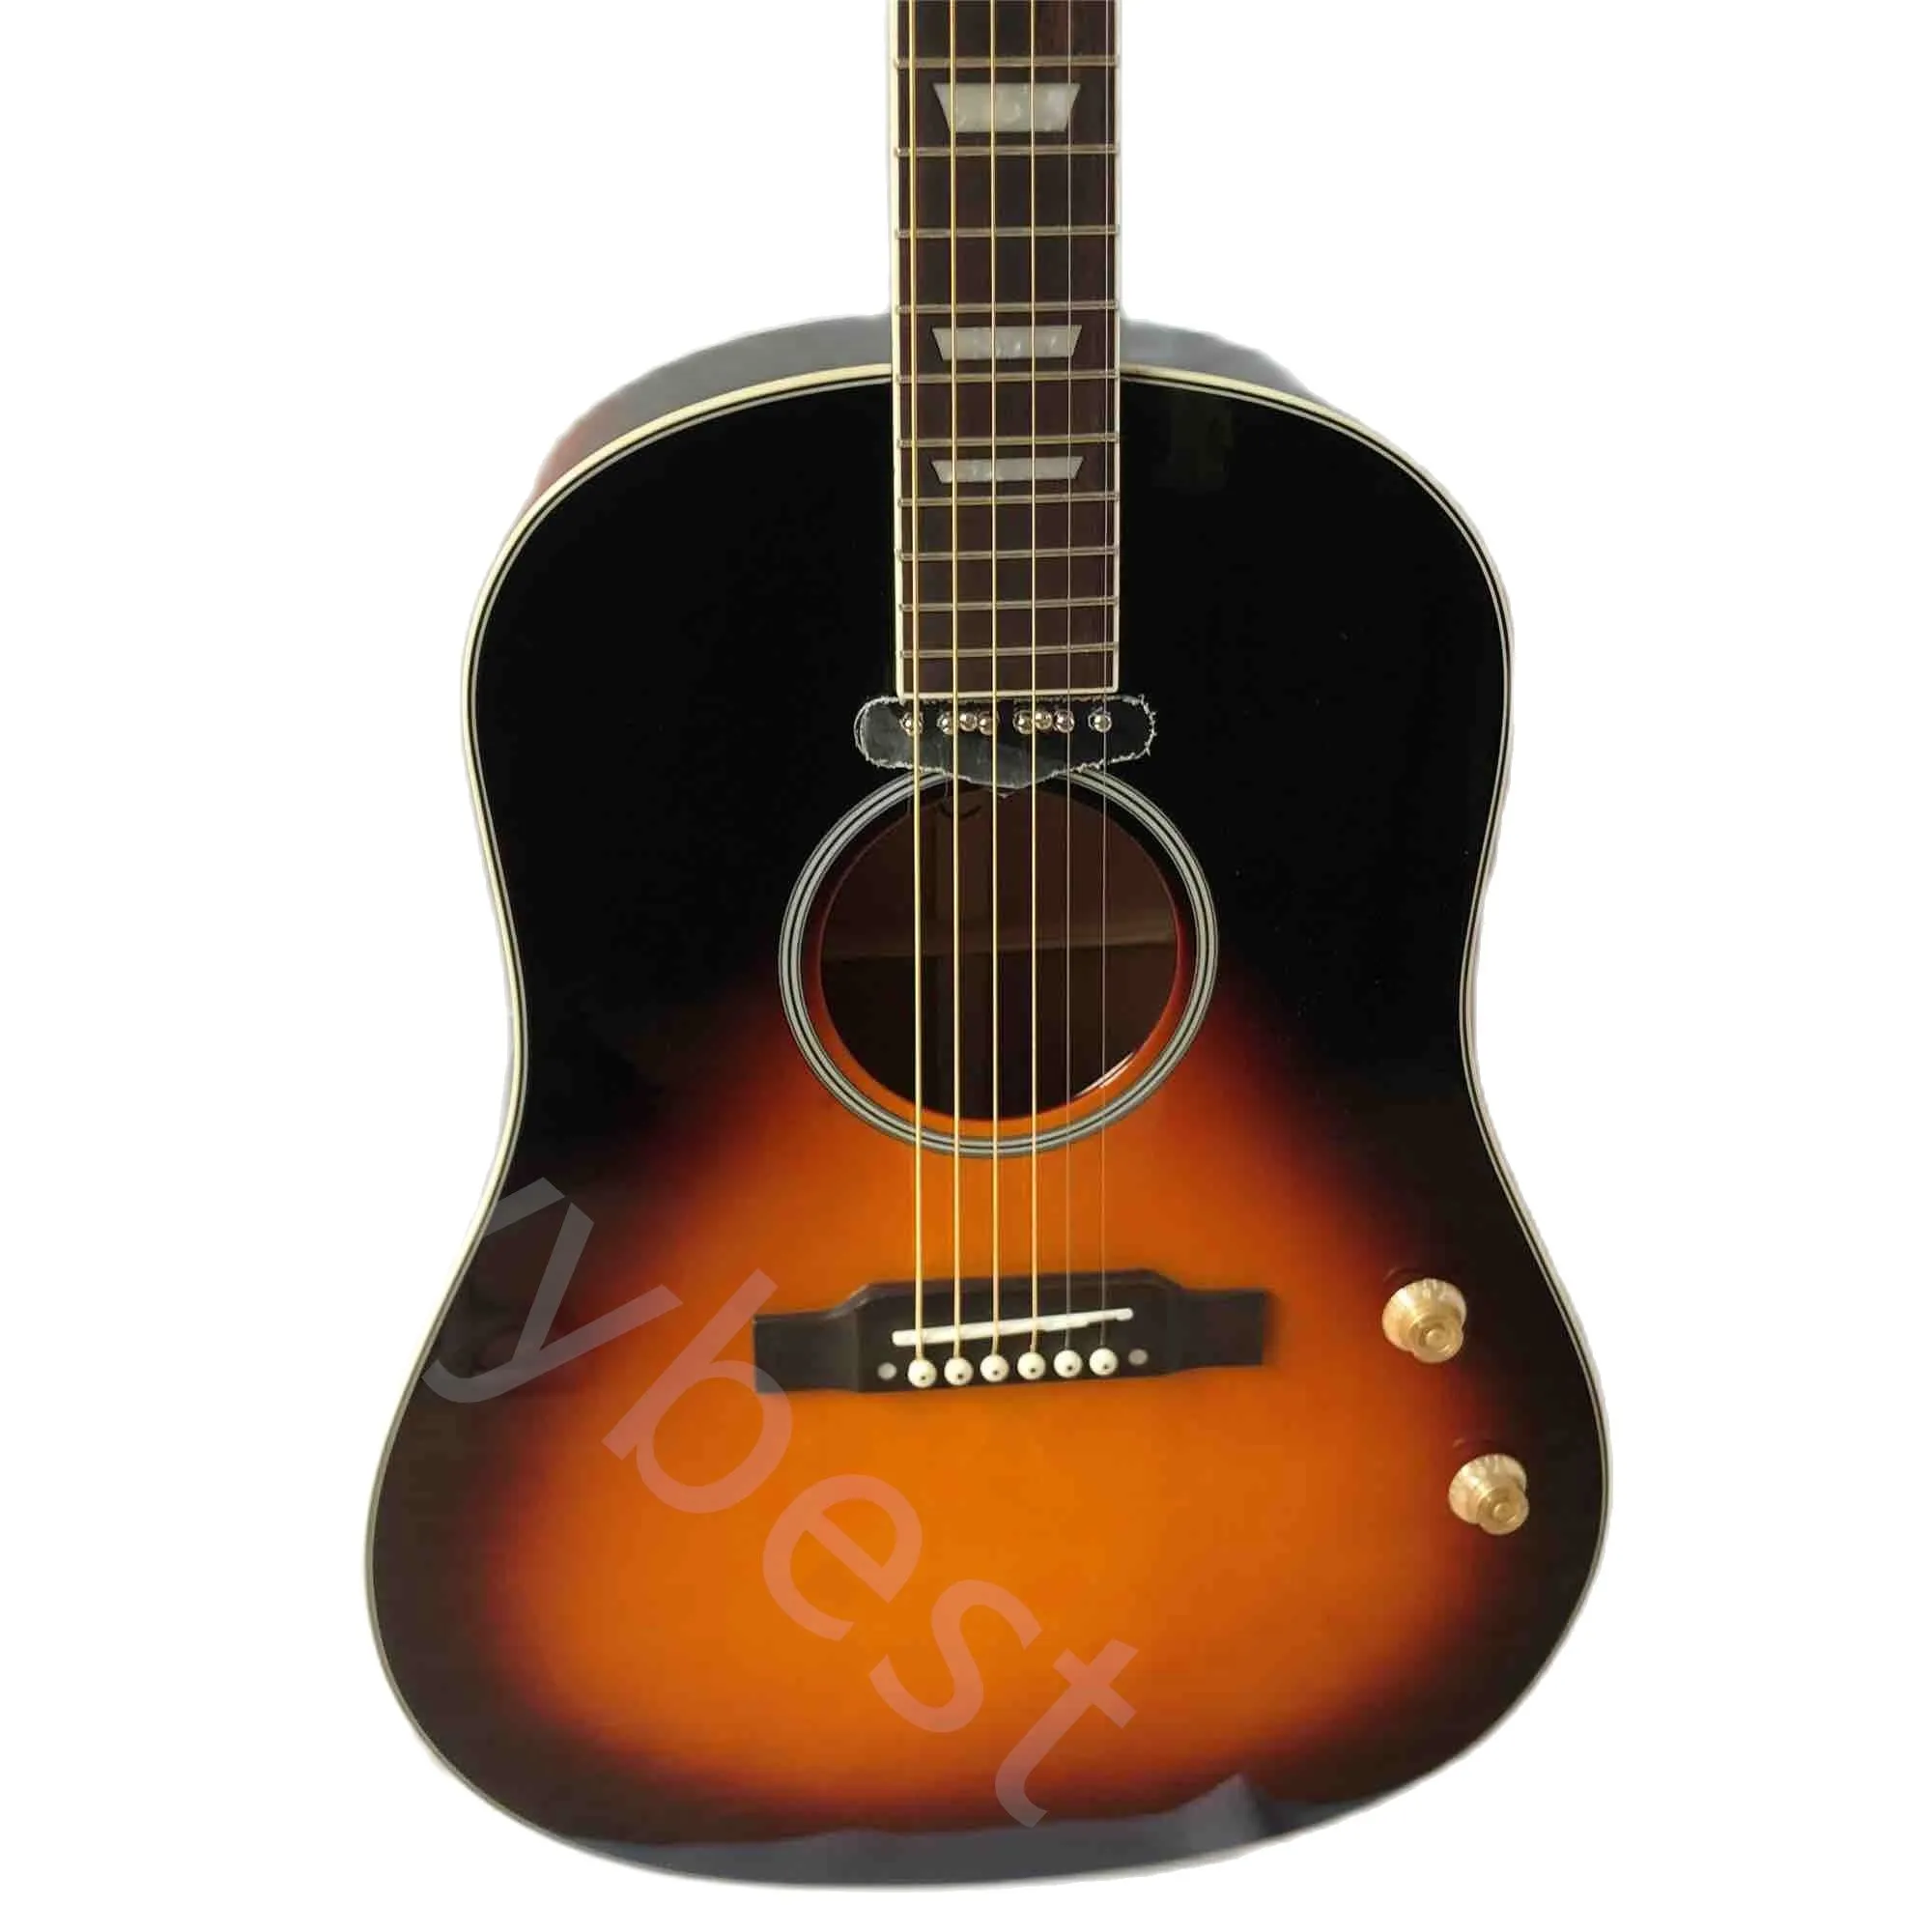 Anpassad John Lennon Electric Acoustic Guitar med ljudhål Passiv pickup J160 i Sunburst Finish